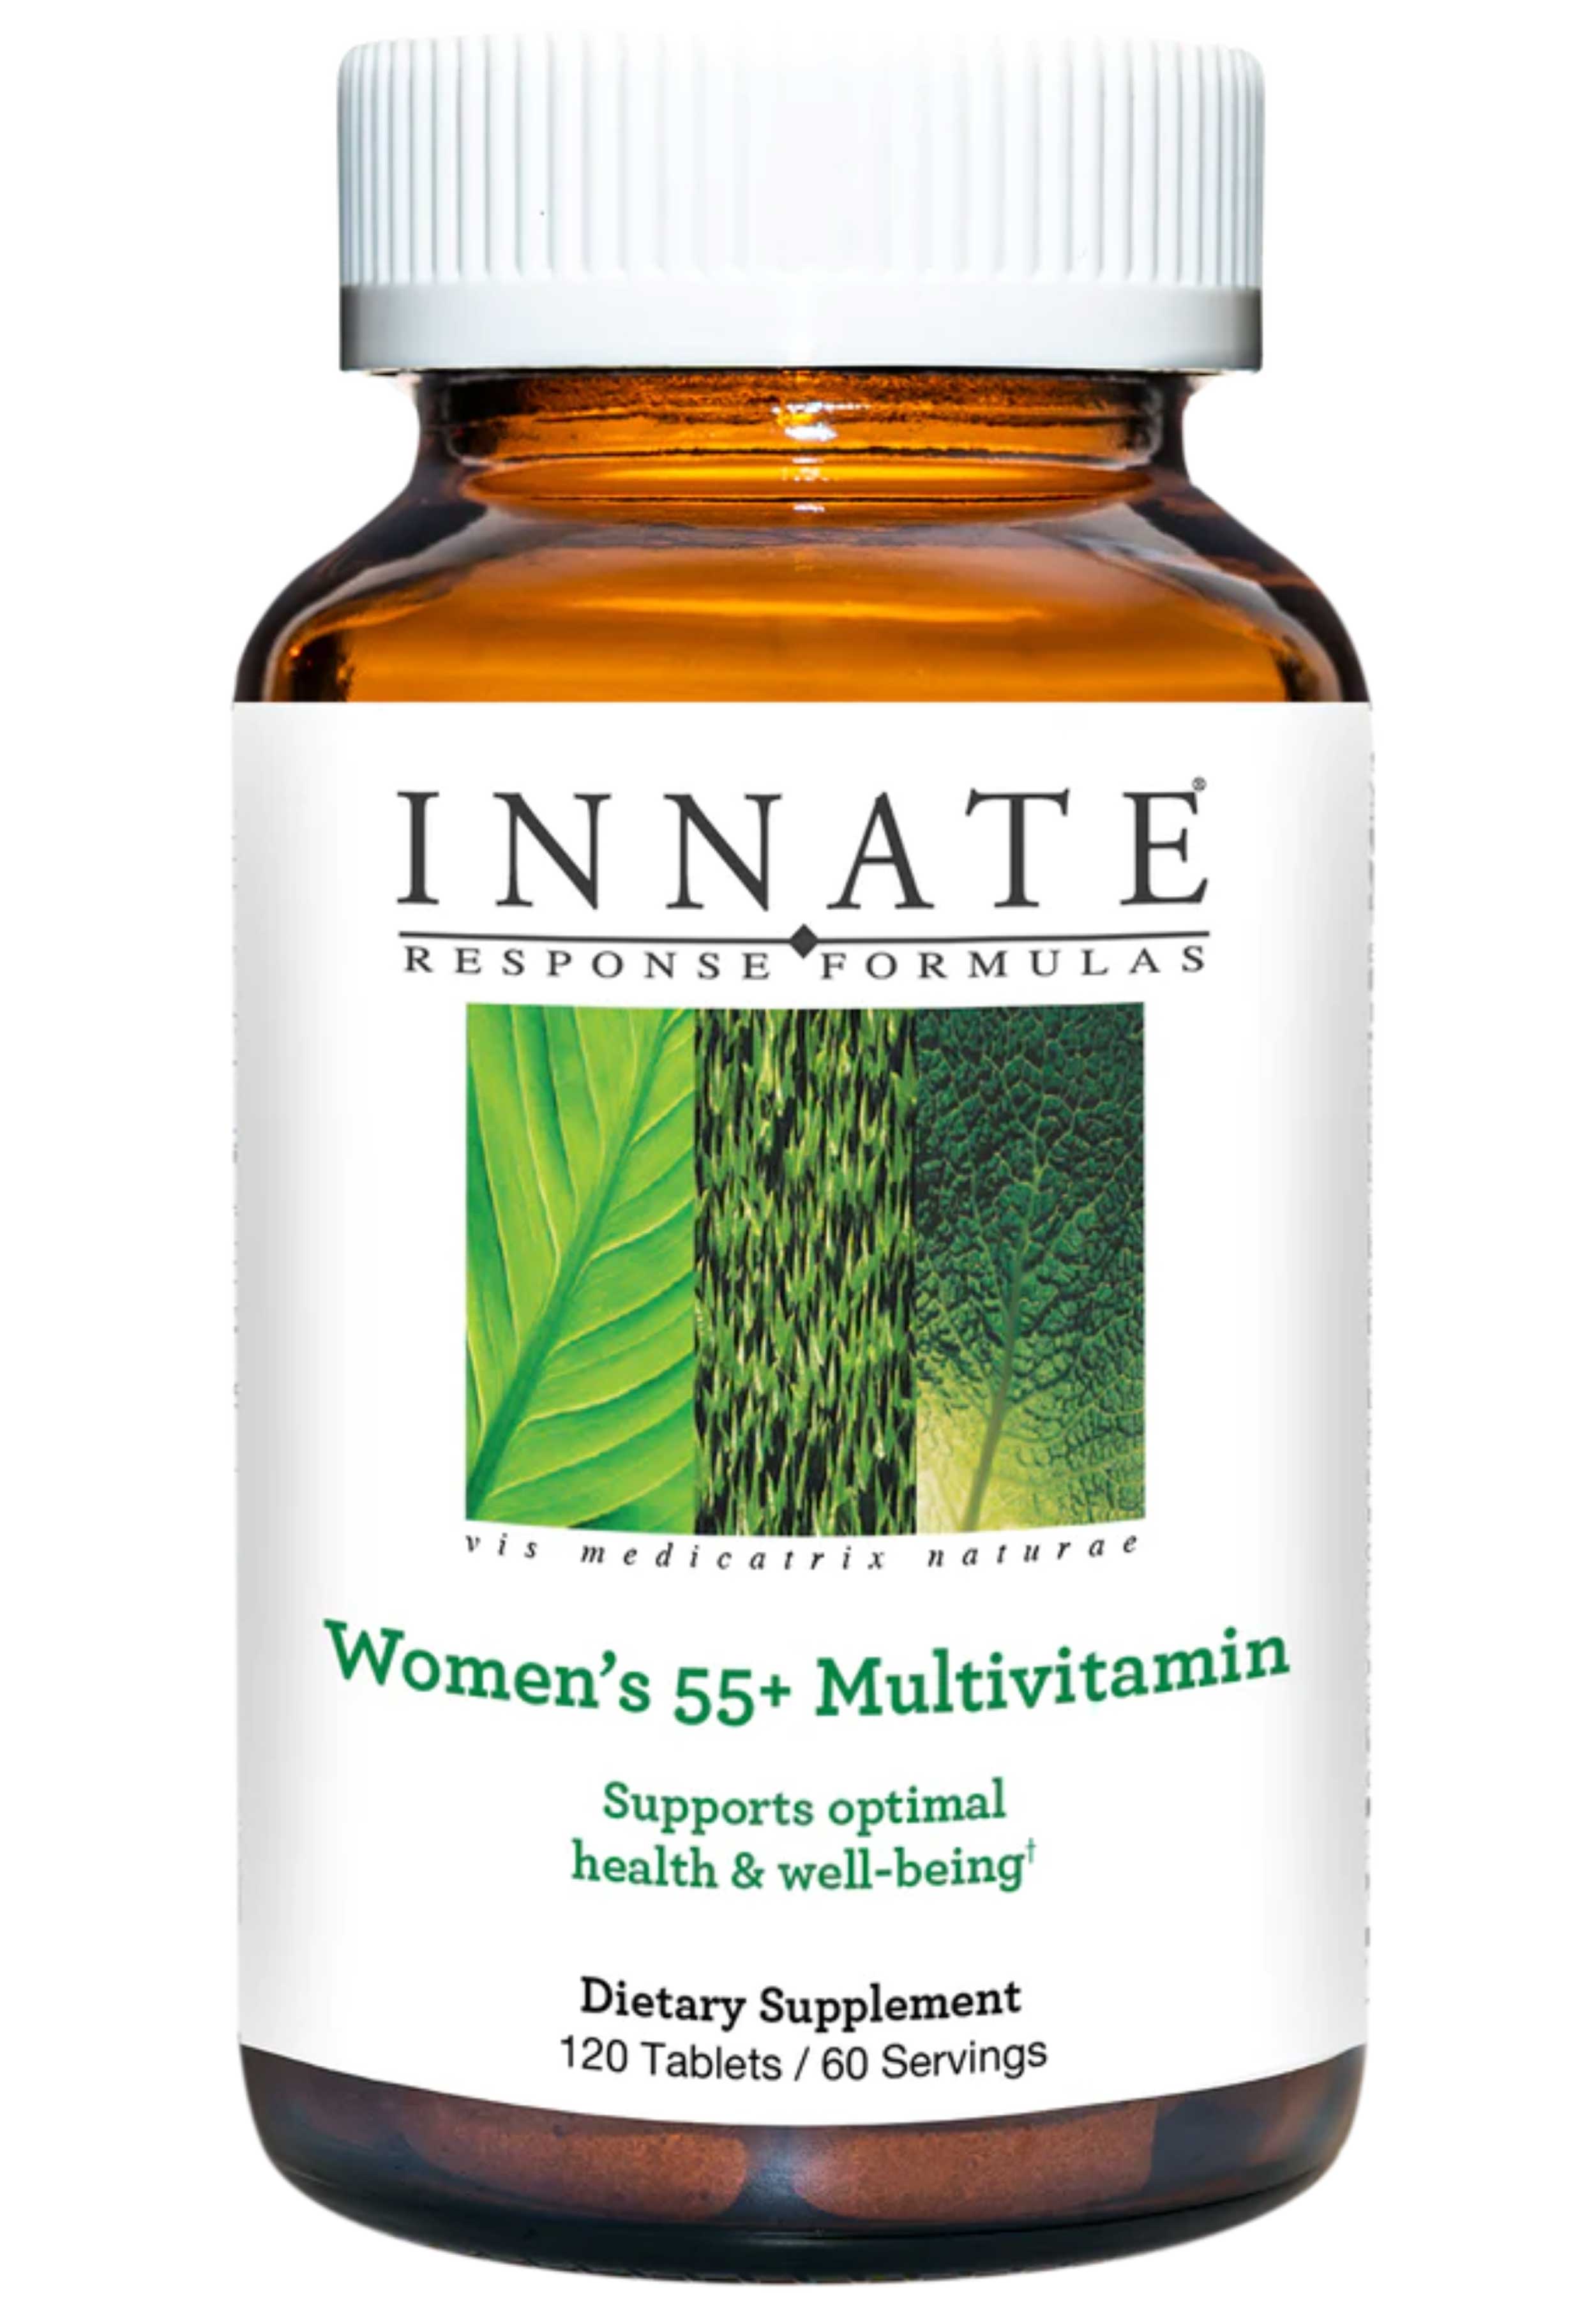 Innate Response Formulas Women's 55+ Multivitamin